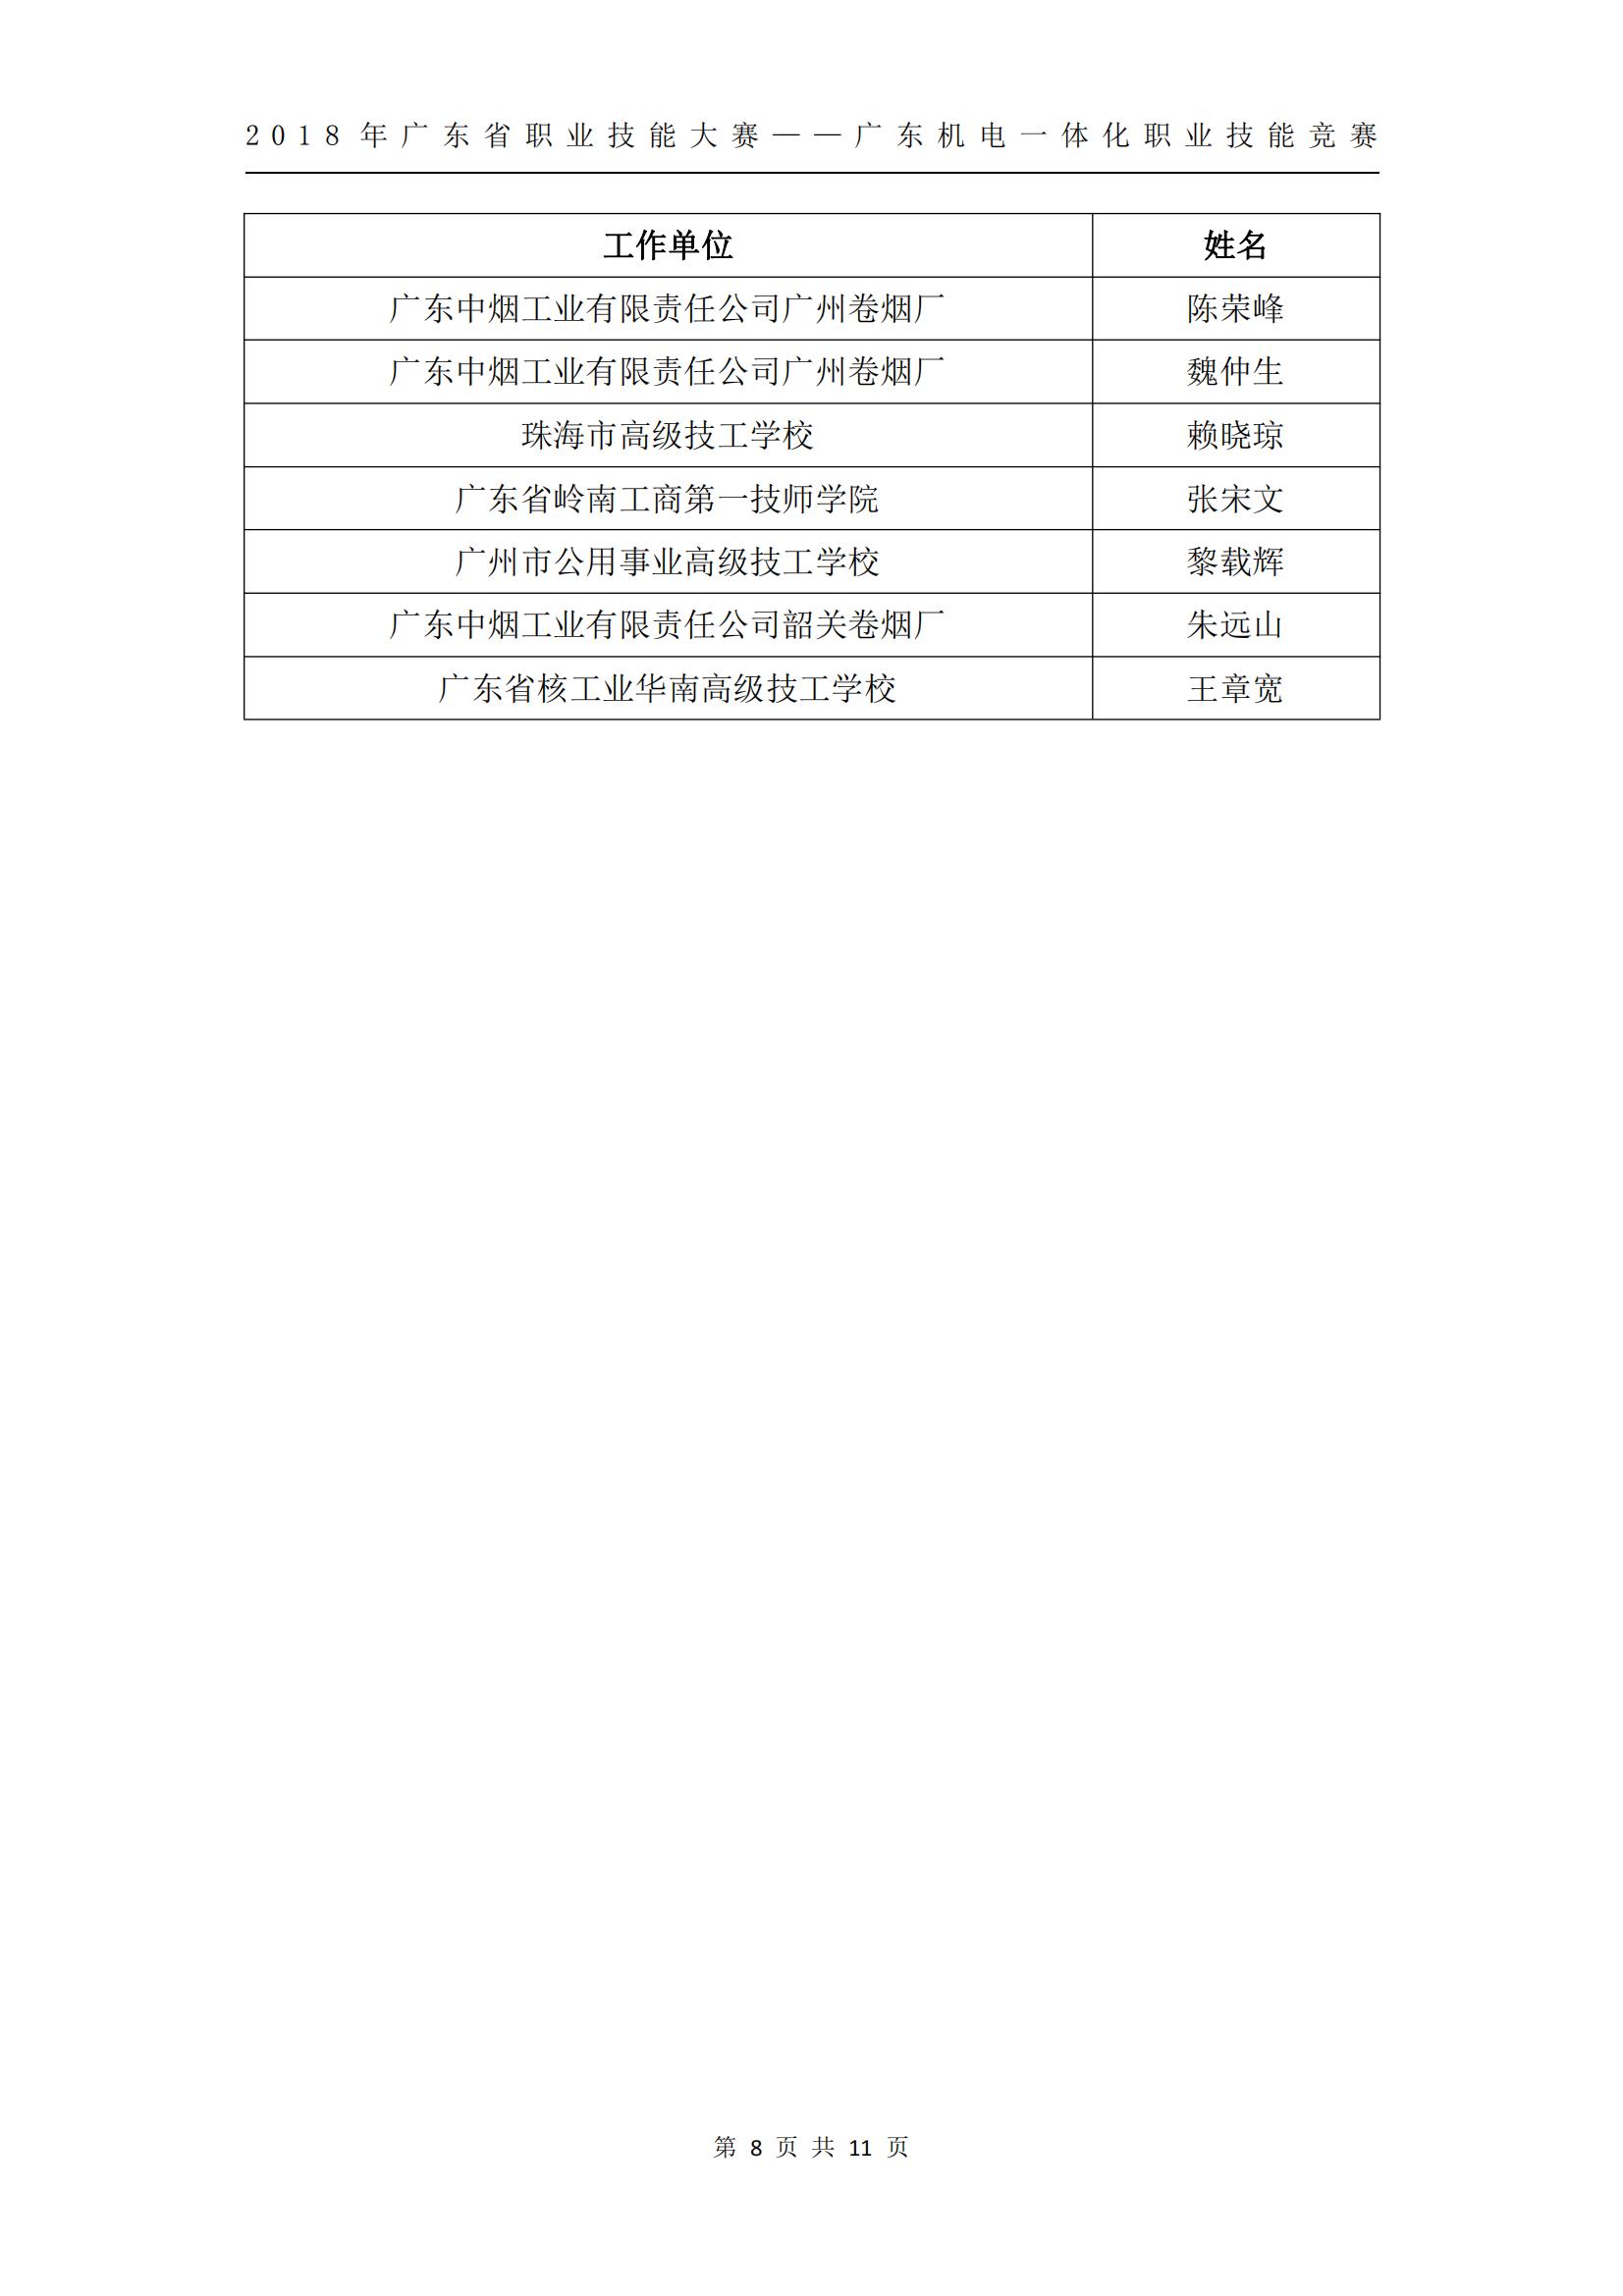 2018 年广东省职业技能大赛——广东机电一体化职业技能竞赛获奖人员和单位公布_07.jpg